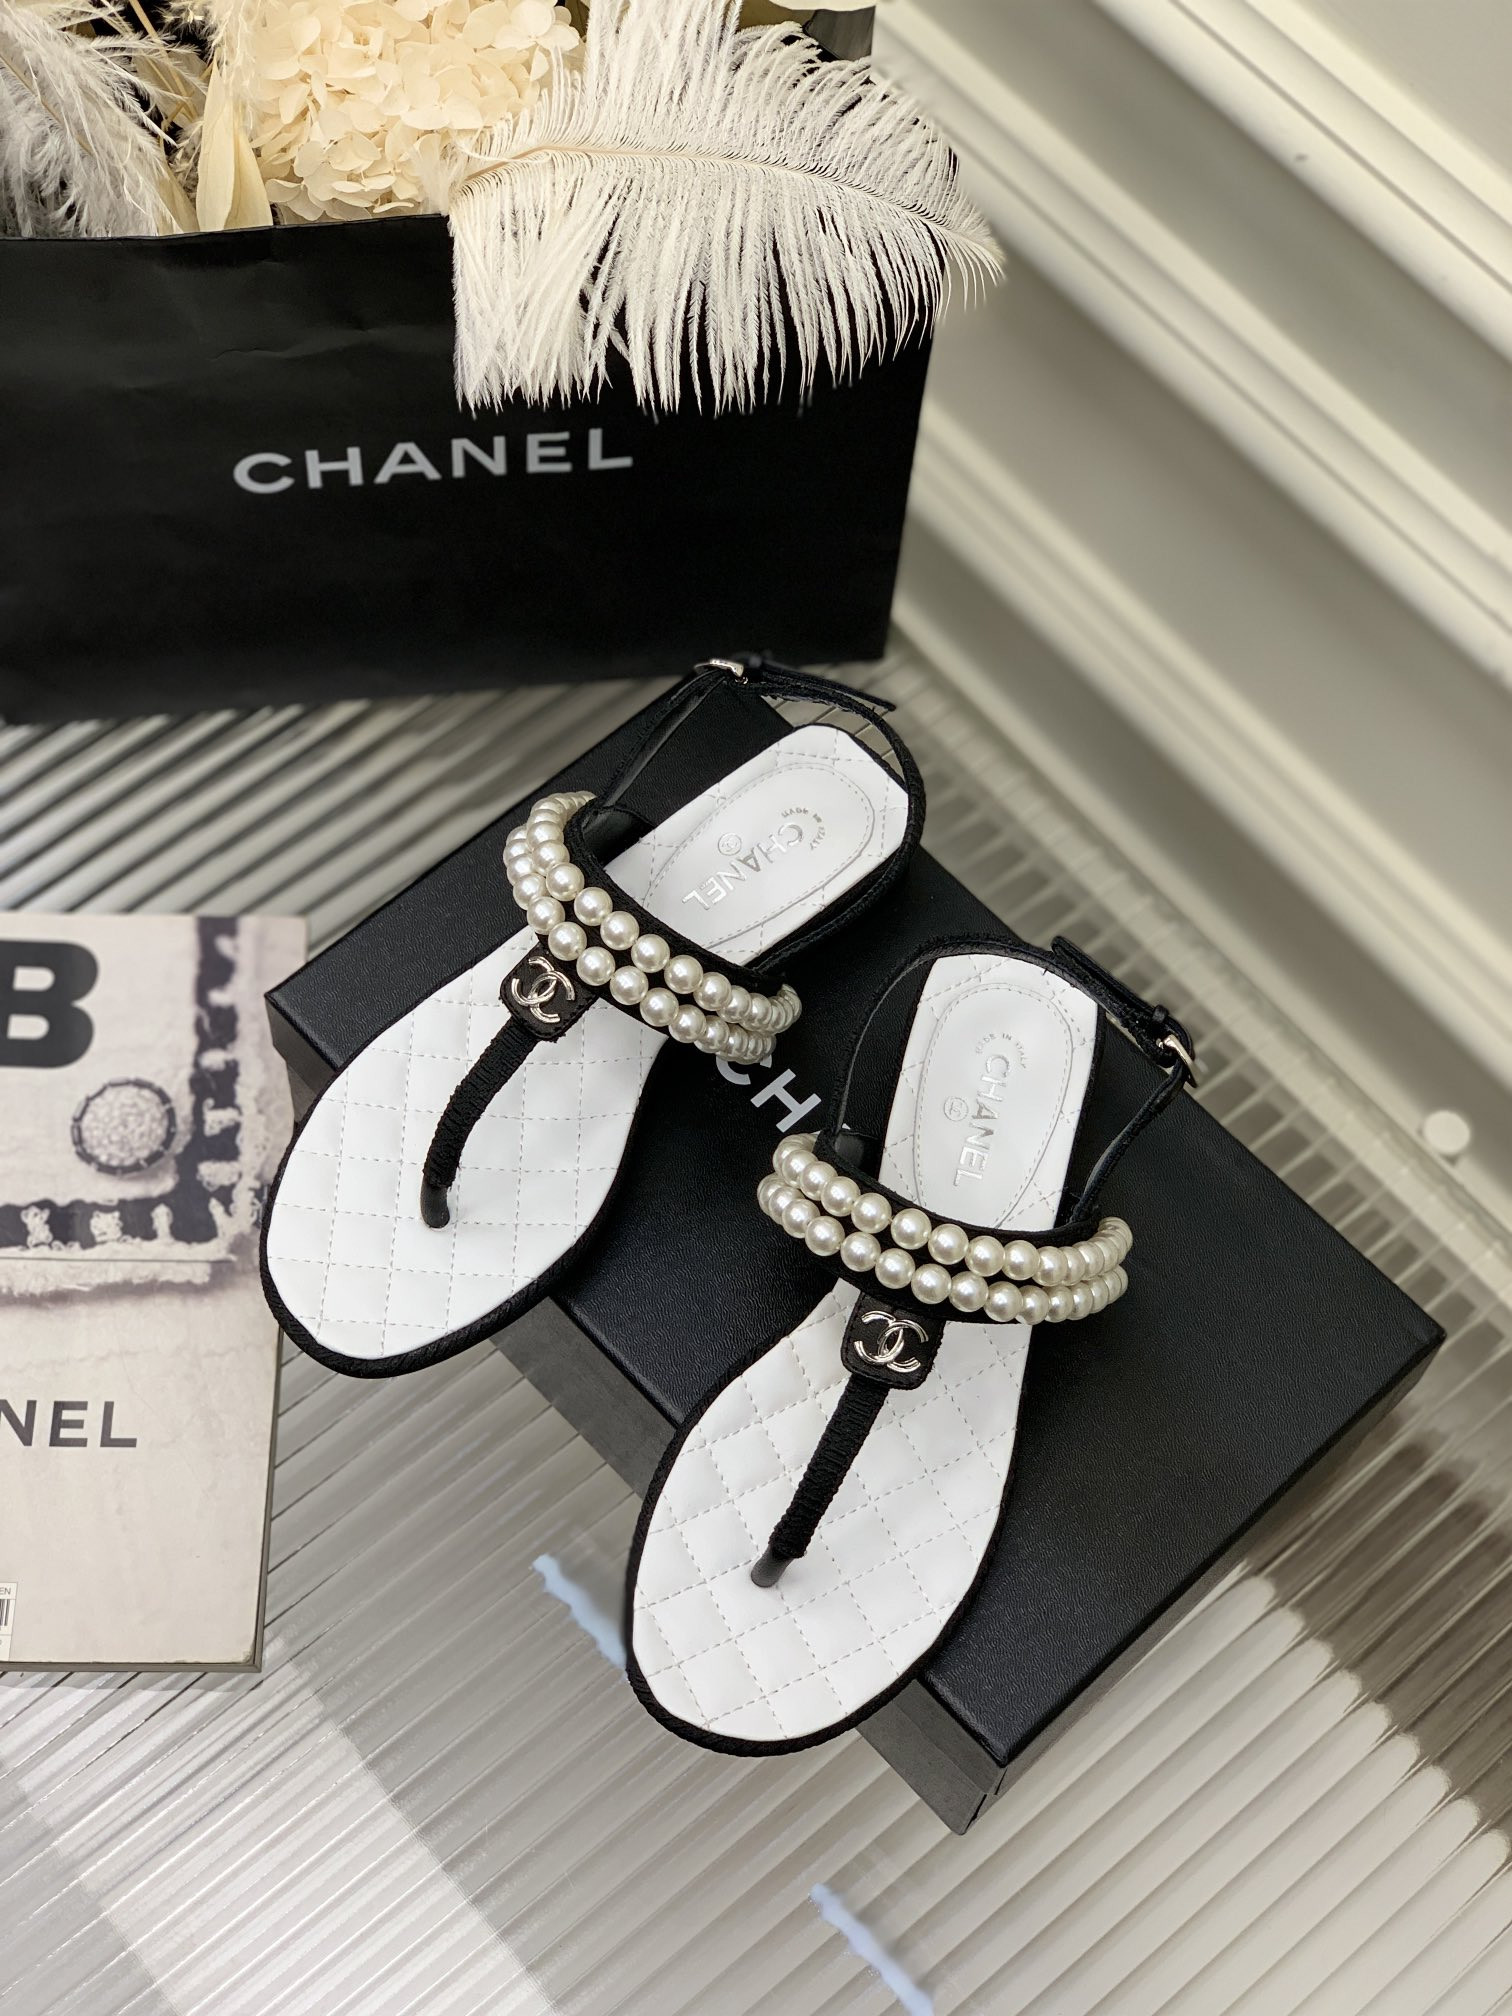 Giày Chanel Siêu Cấp Sandal Bệt Xỏ Ngón Màu Trắng Kèm Quai Đính Hai Chuỗi Ngọc